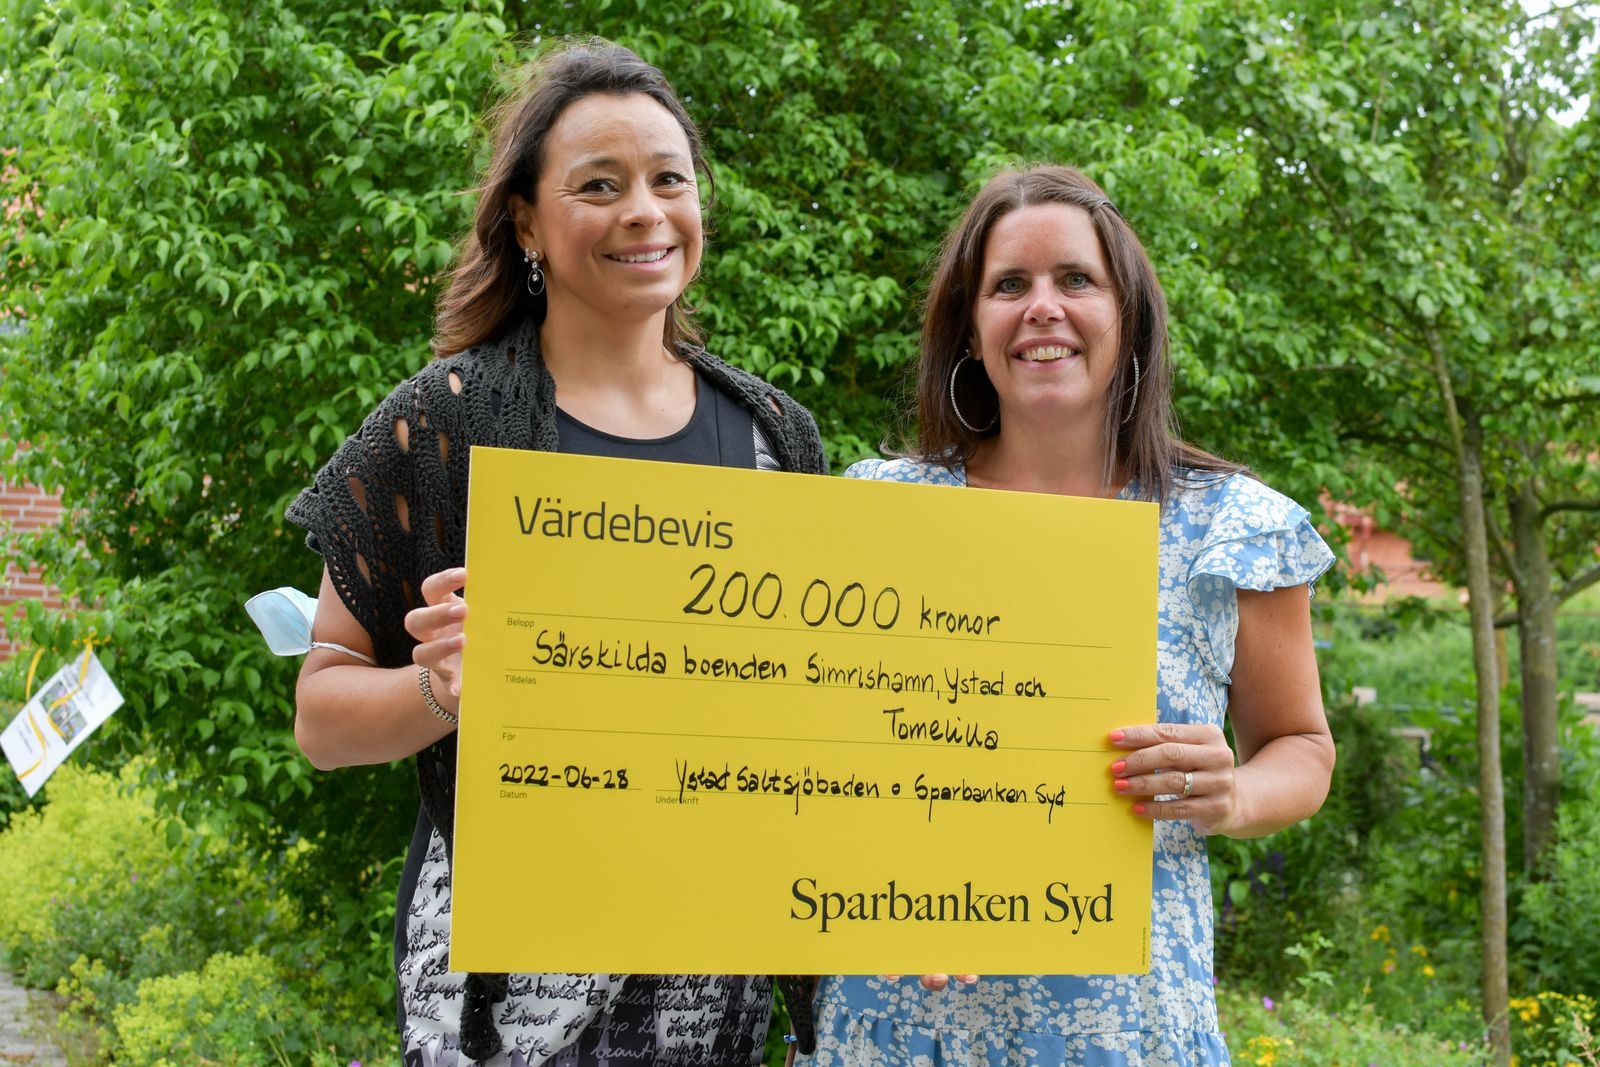 Sara Cederlund och Angelica Bäckström från Medborgarskolan, som båda tidigare har arbetat som undersköterskor, vet hur mycket initiativet betyder för målgruppen.